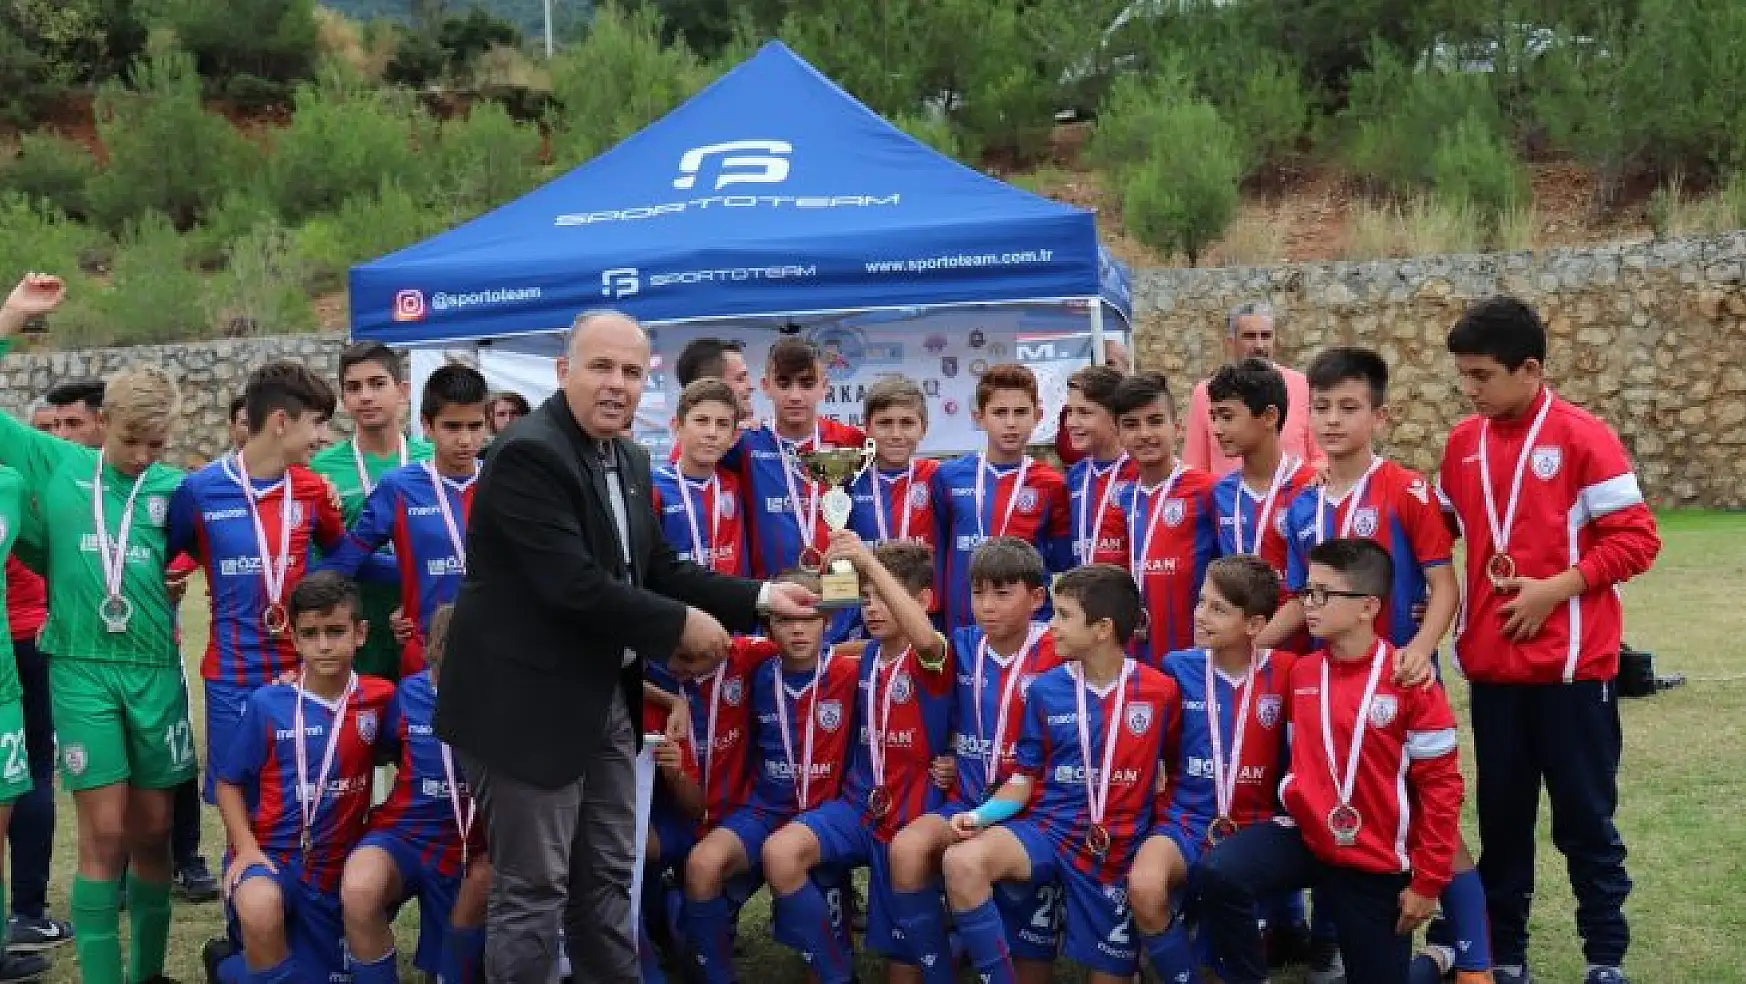 Fethiye Junior Cup'da ödül töreni gerçekleşti